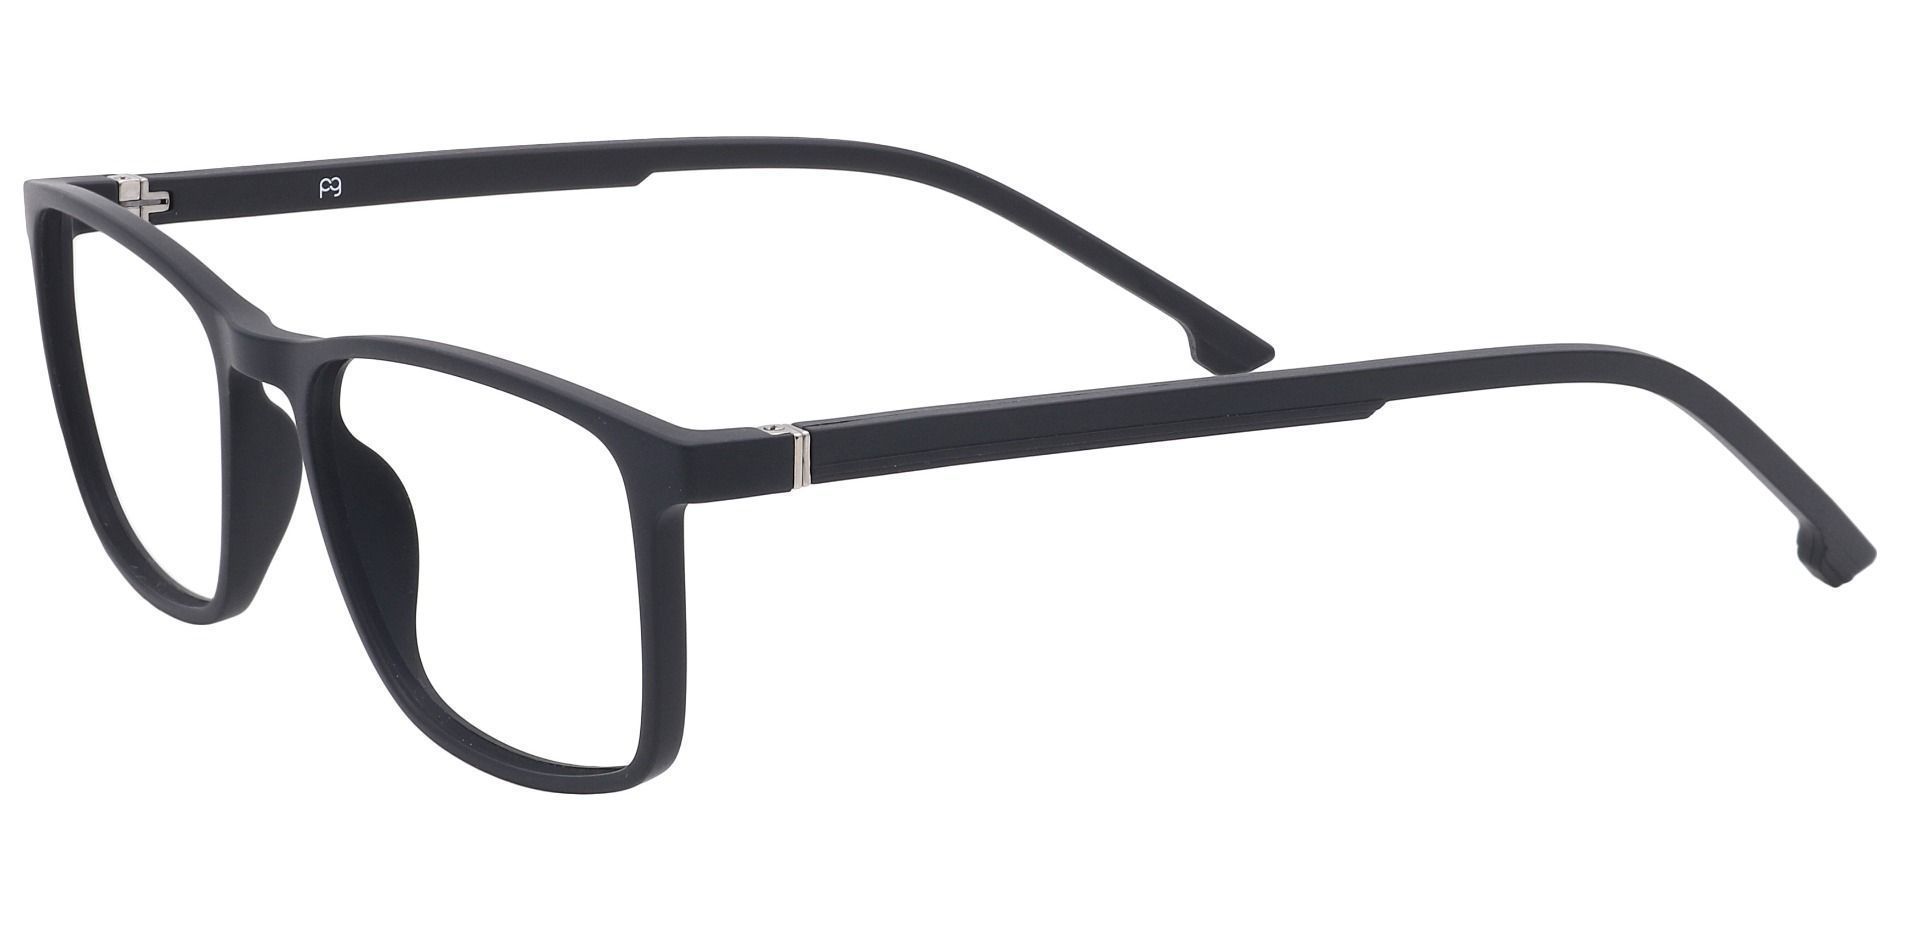 Franklin Rectangle Non-Rx Glasses -   Matte Black  